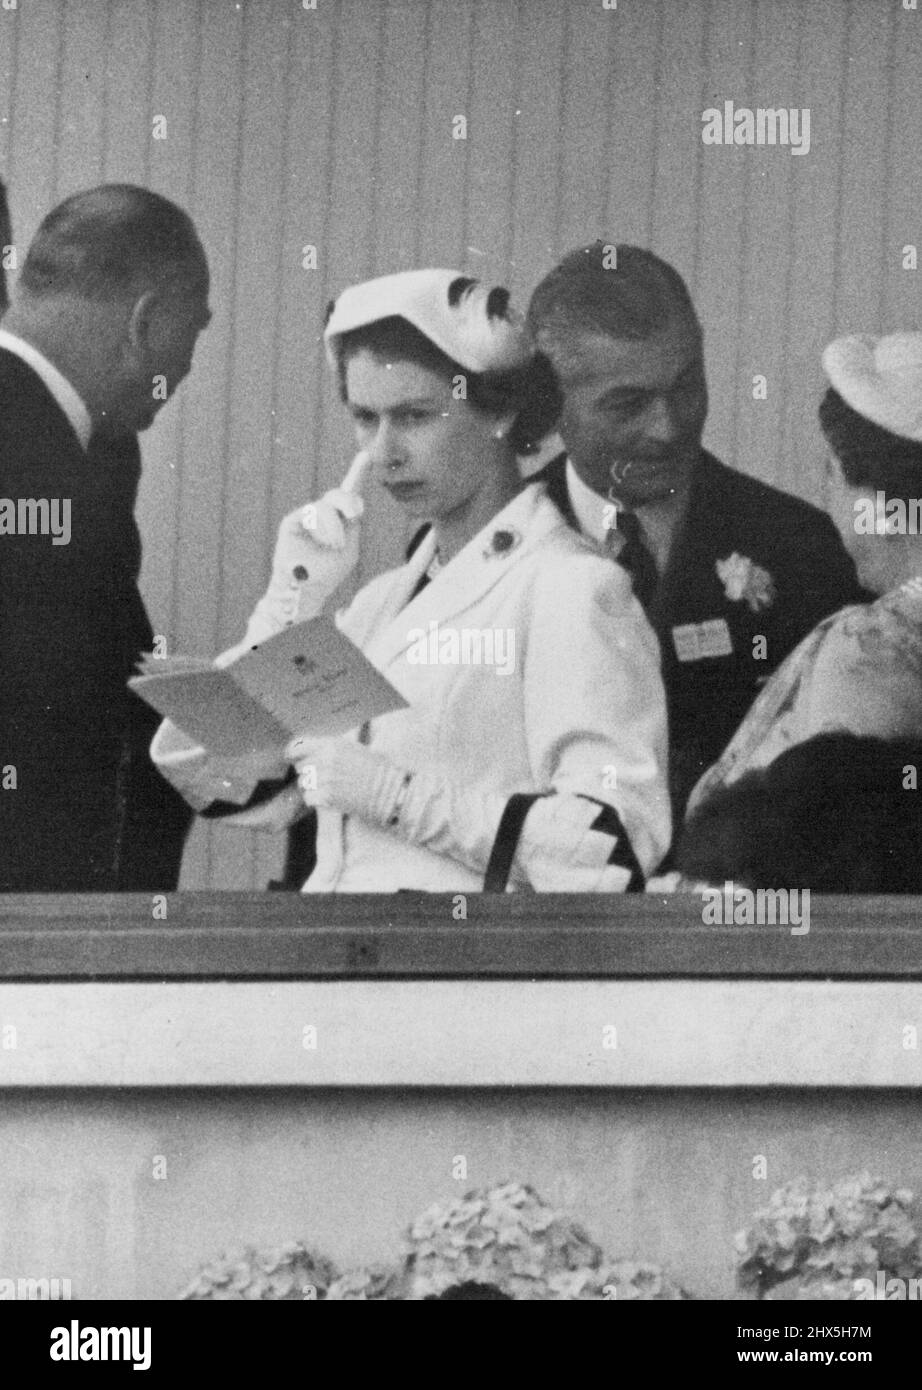 La Reine dans l'ambiance attentionnés à l'Ascot. Sa Majesté la Reine met pensivement son doigt sur sa joue, tout en étudiant sa carte de course dans la boîte royale d'Ascot aujourd'hui. Sa Majesté a été habillée en blanc aujourd'hui. 18 juin 1953. (Photo de Fox photos). Banque D'Images